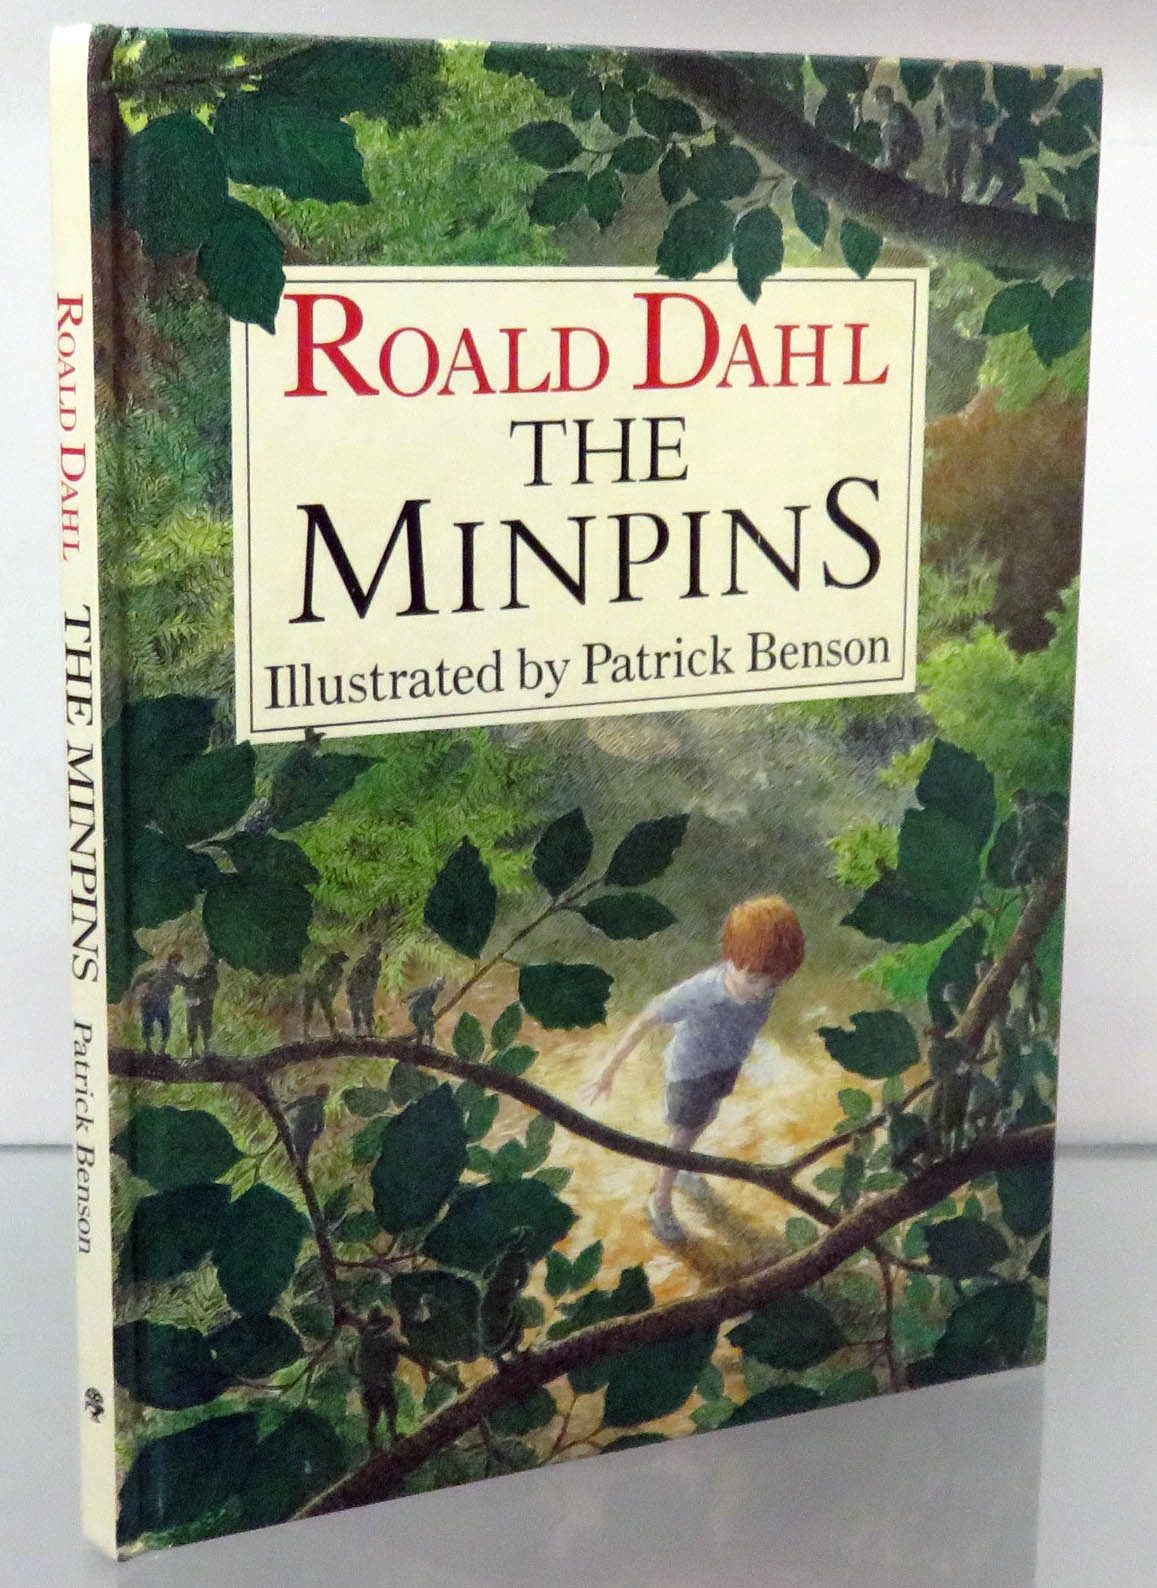 The Minipins 